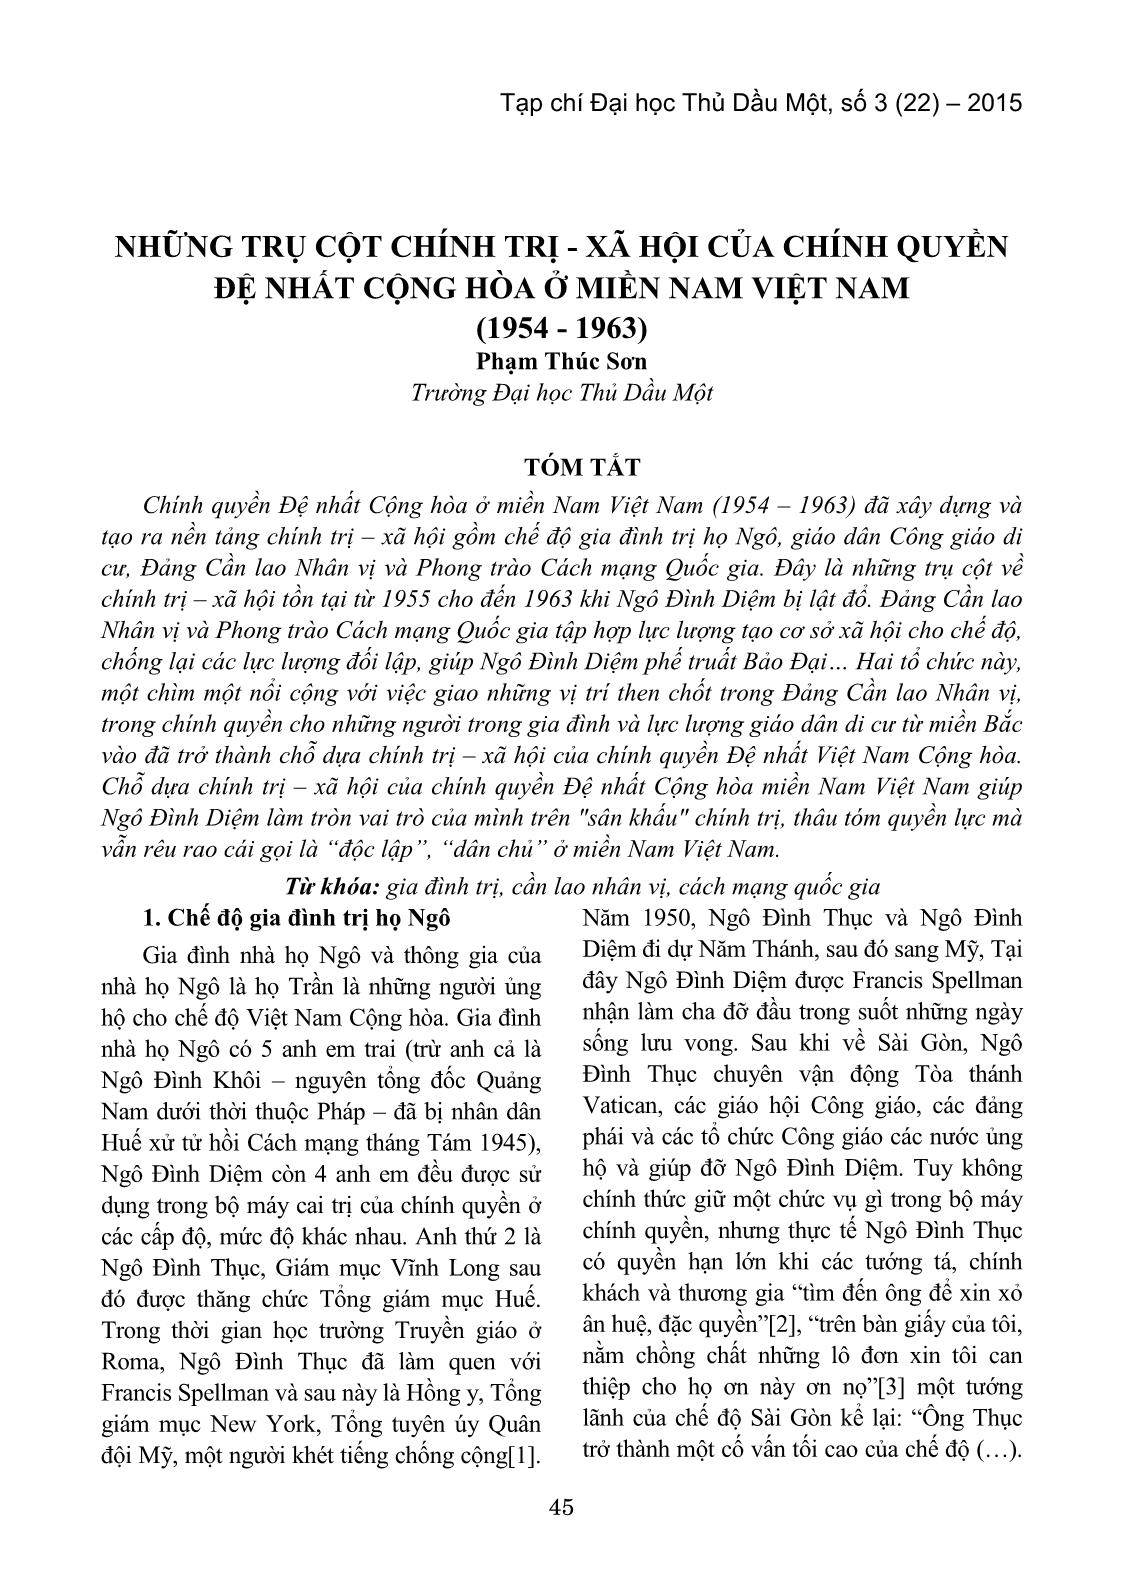 Những trụ cột chính trị - xã hội của chính quyền đệ nhất cộng hòa ở miền Nam Việt Nam (1954 - 1963) trang 1